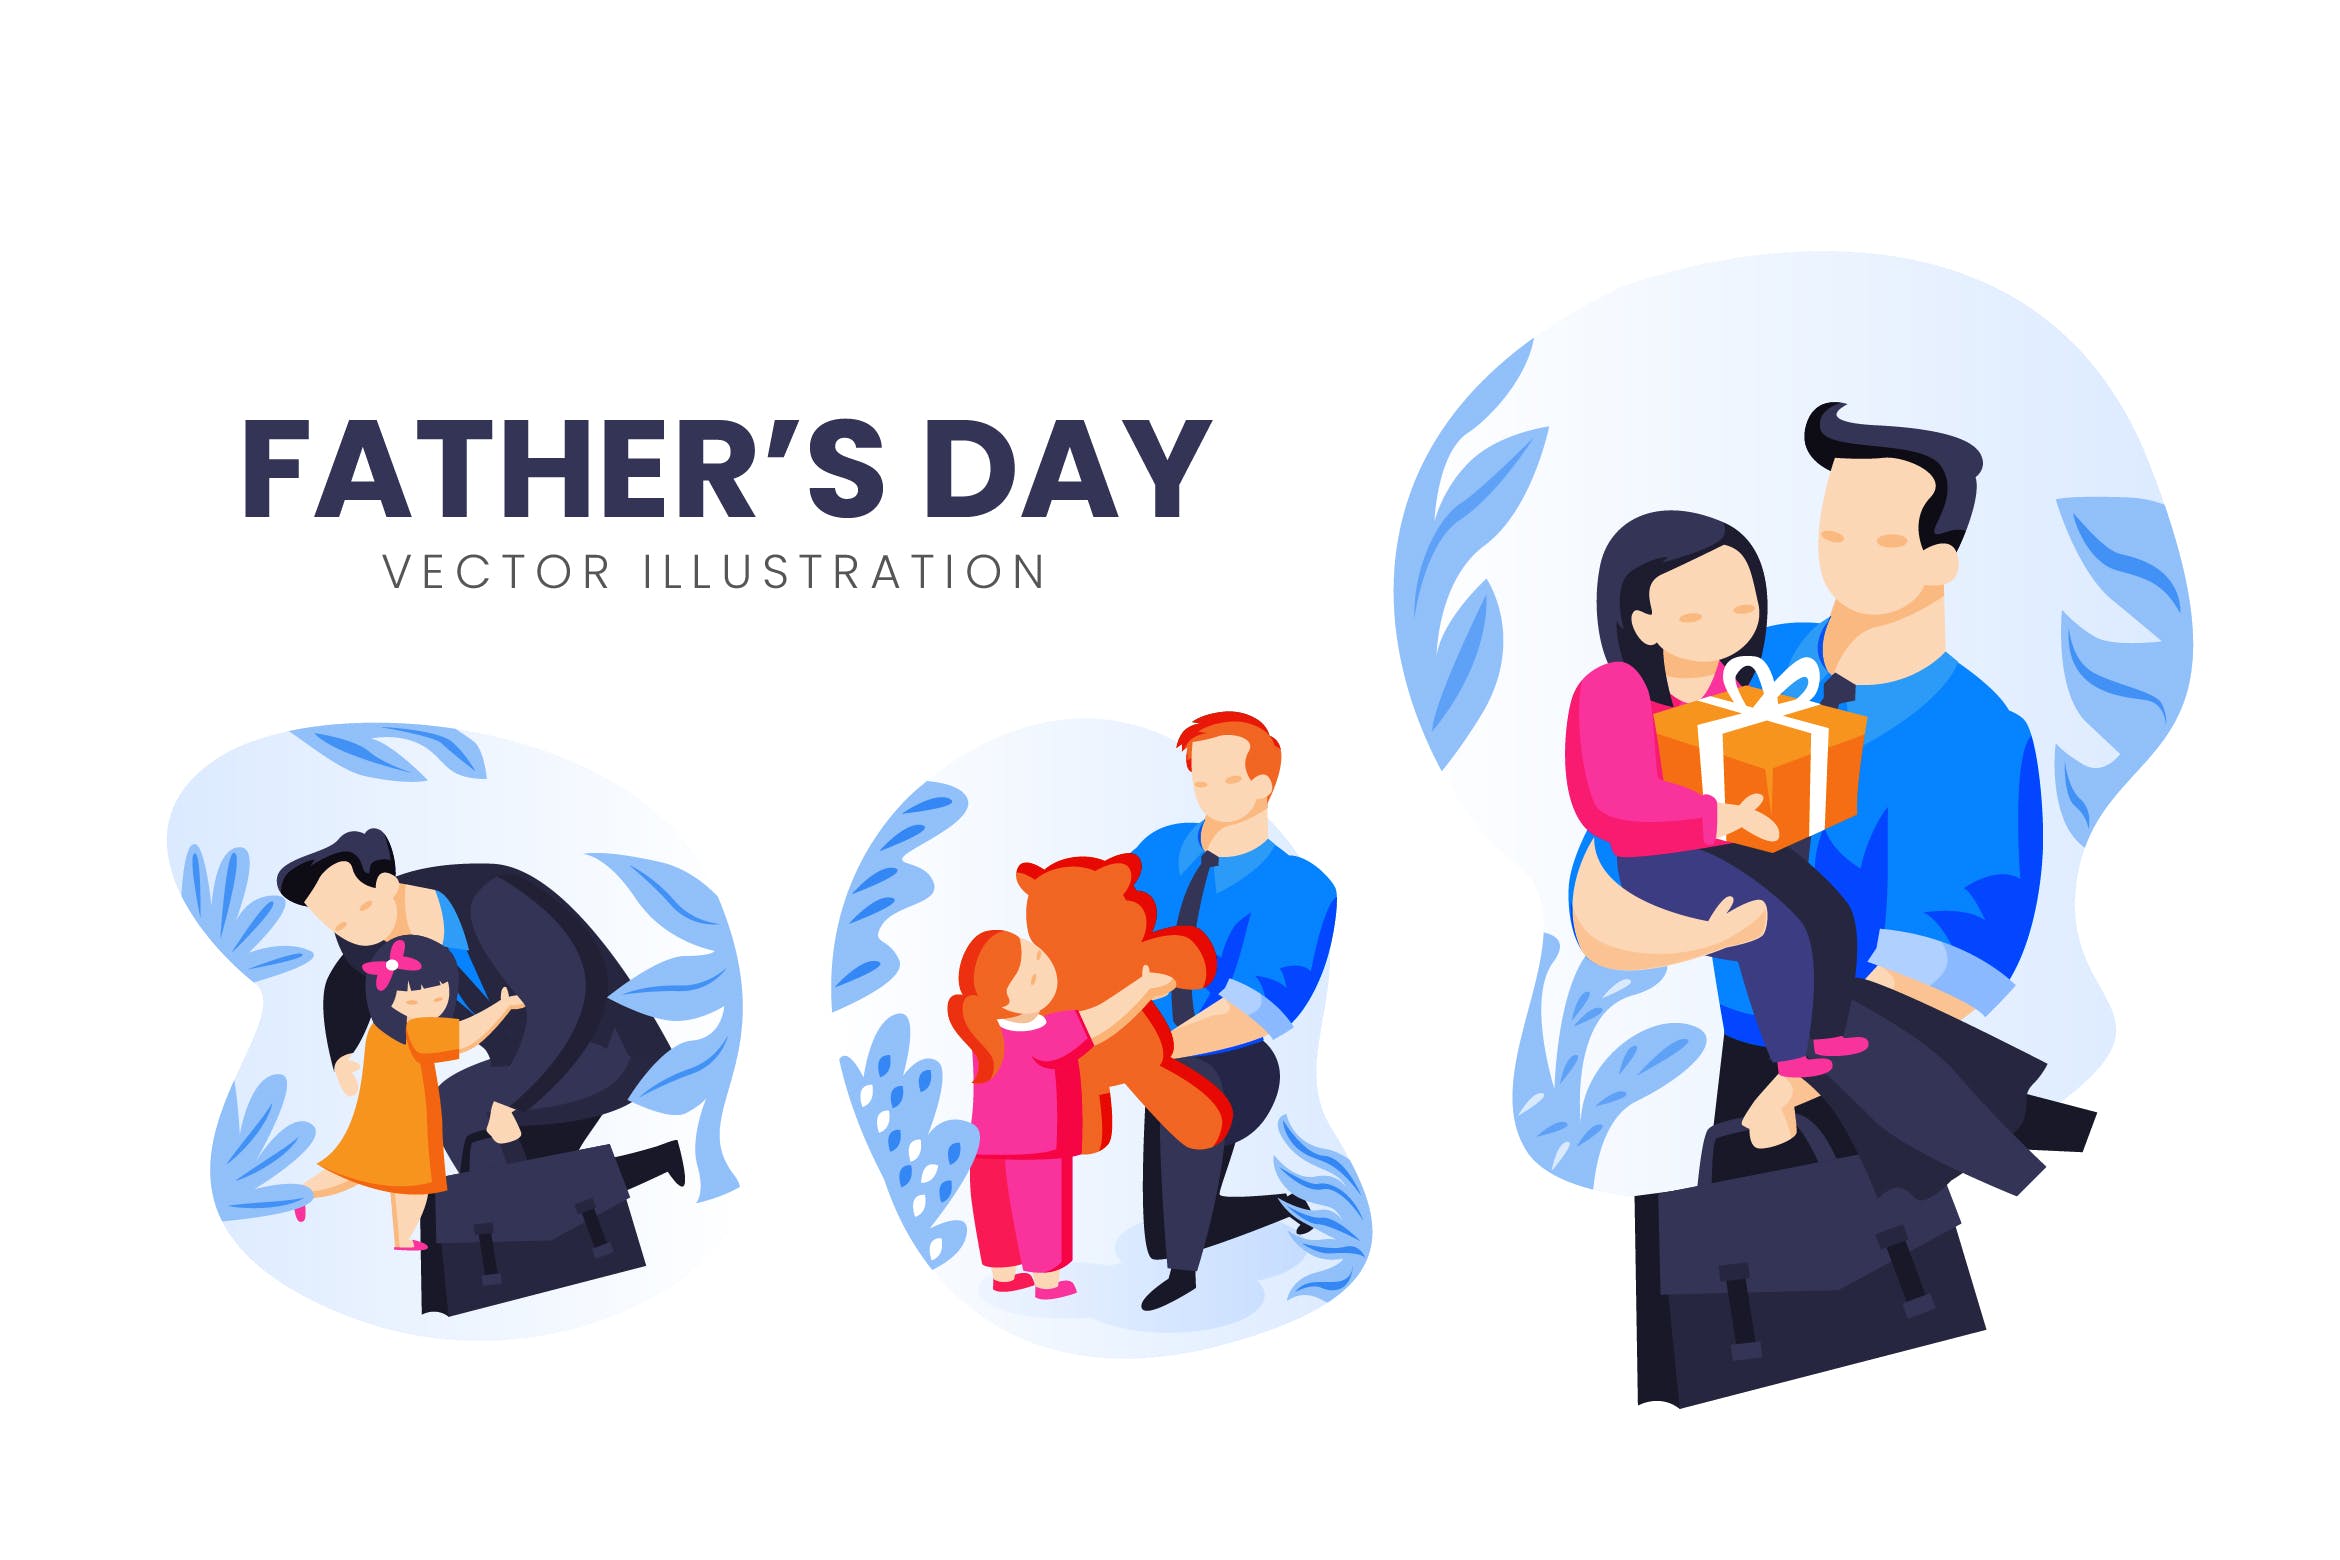 父亲节主题人物形象素材中国精选手绘插画矢量素材 Fathers Day Vector Character Set插图